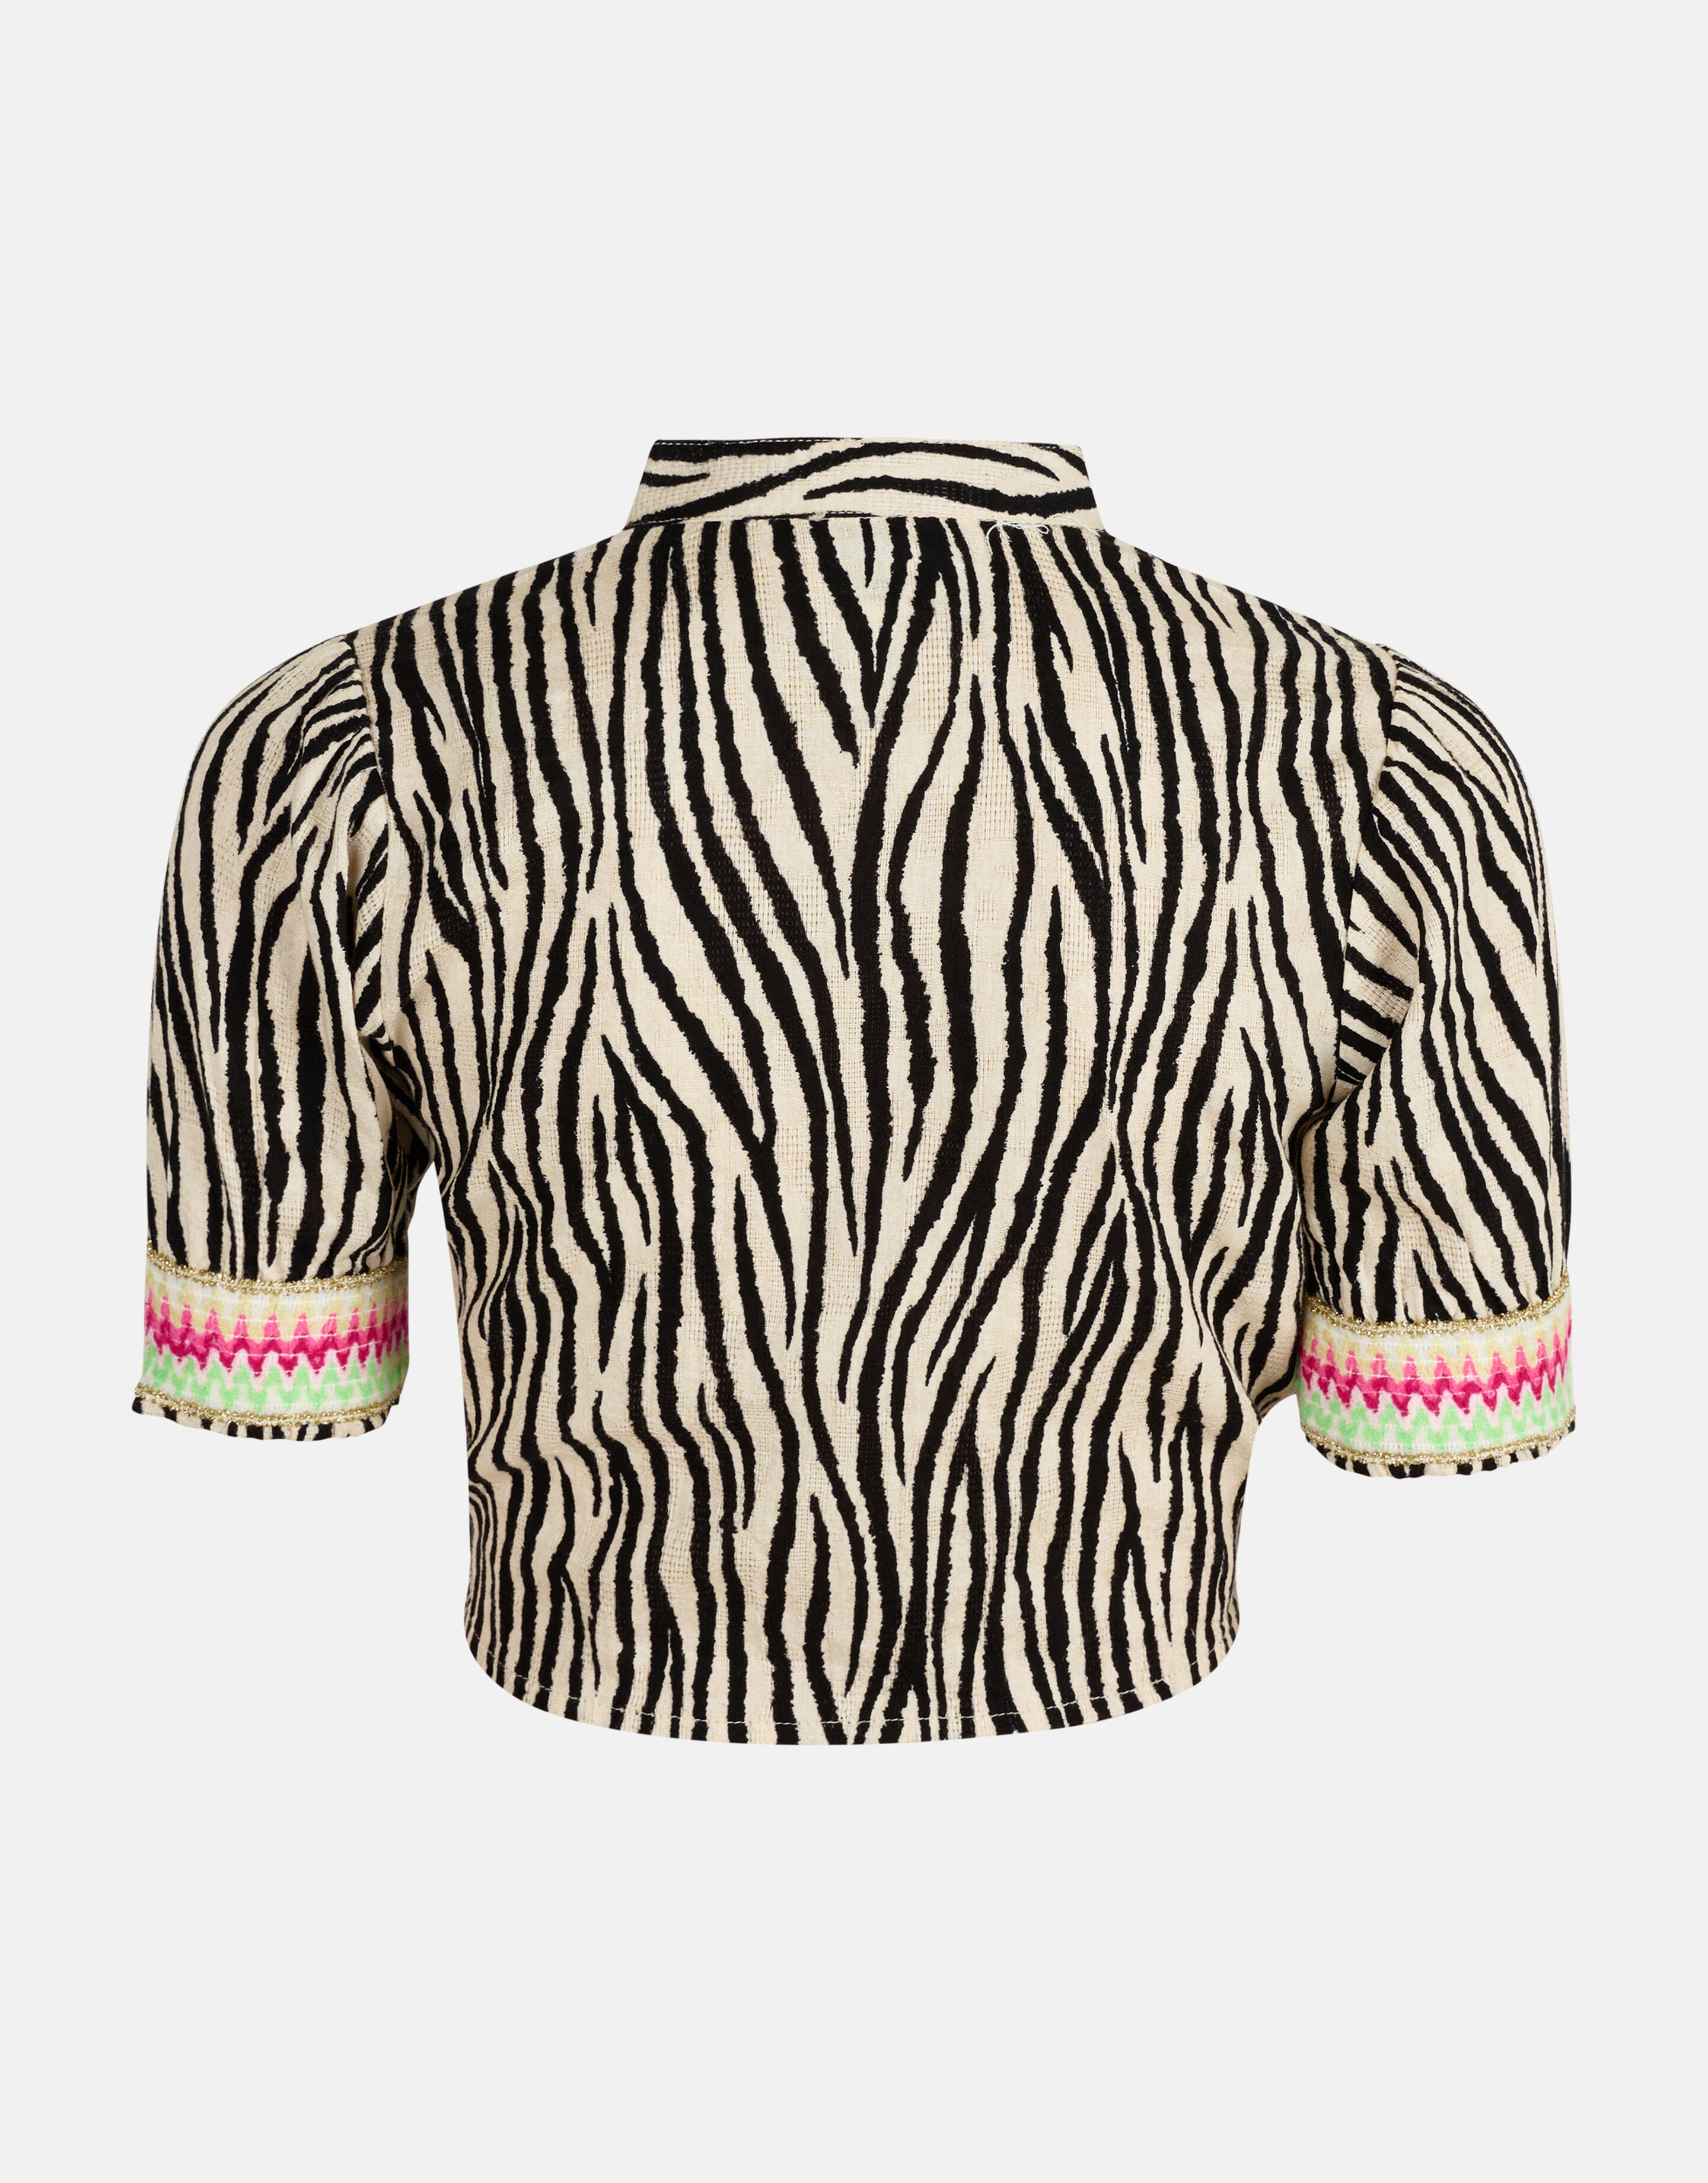 Bluse mit Zebramuster Schwarz/Weiß SHOEBY GIRLS